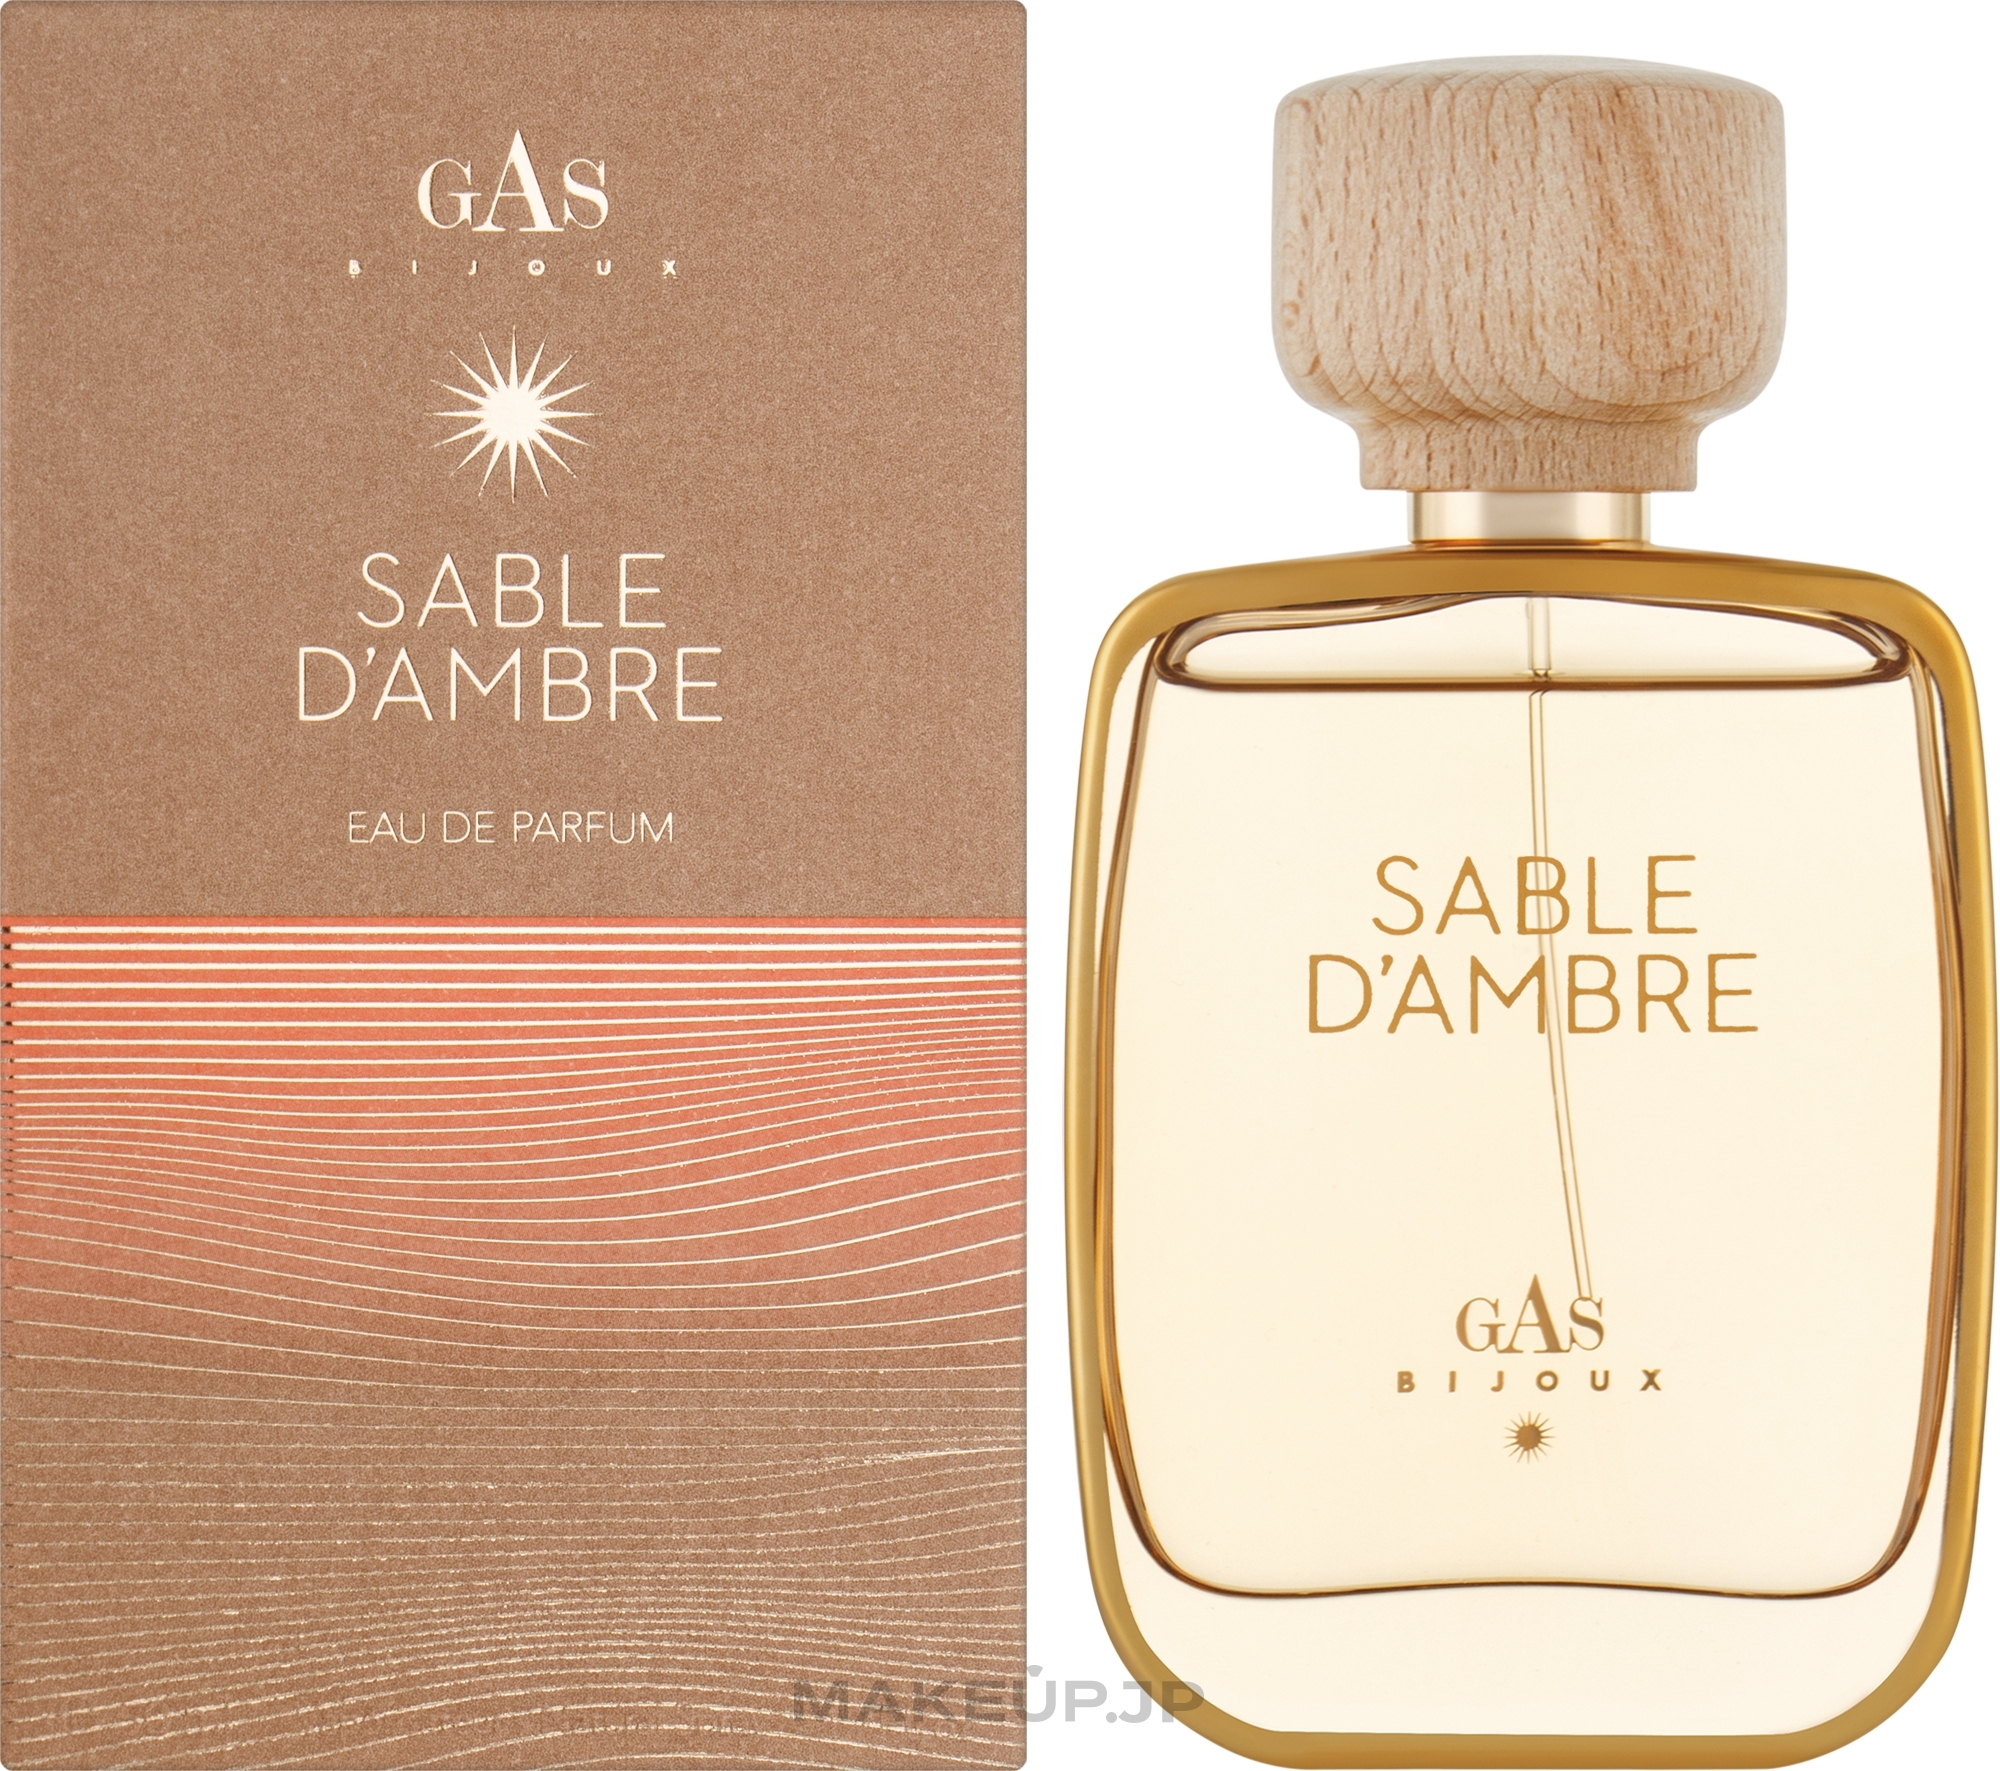 Gas Bijoux Sable d'amber - Eau de Parfum — photo 50 ml